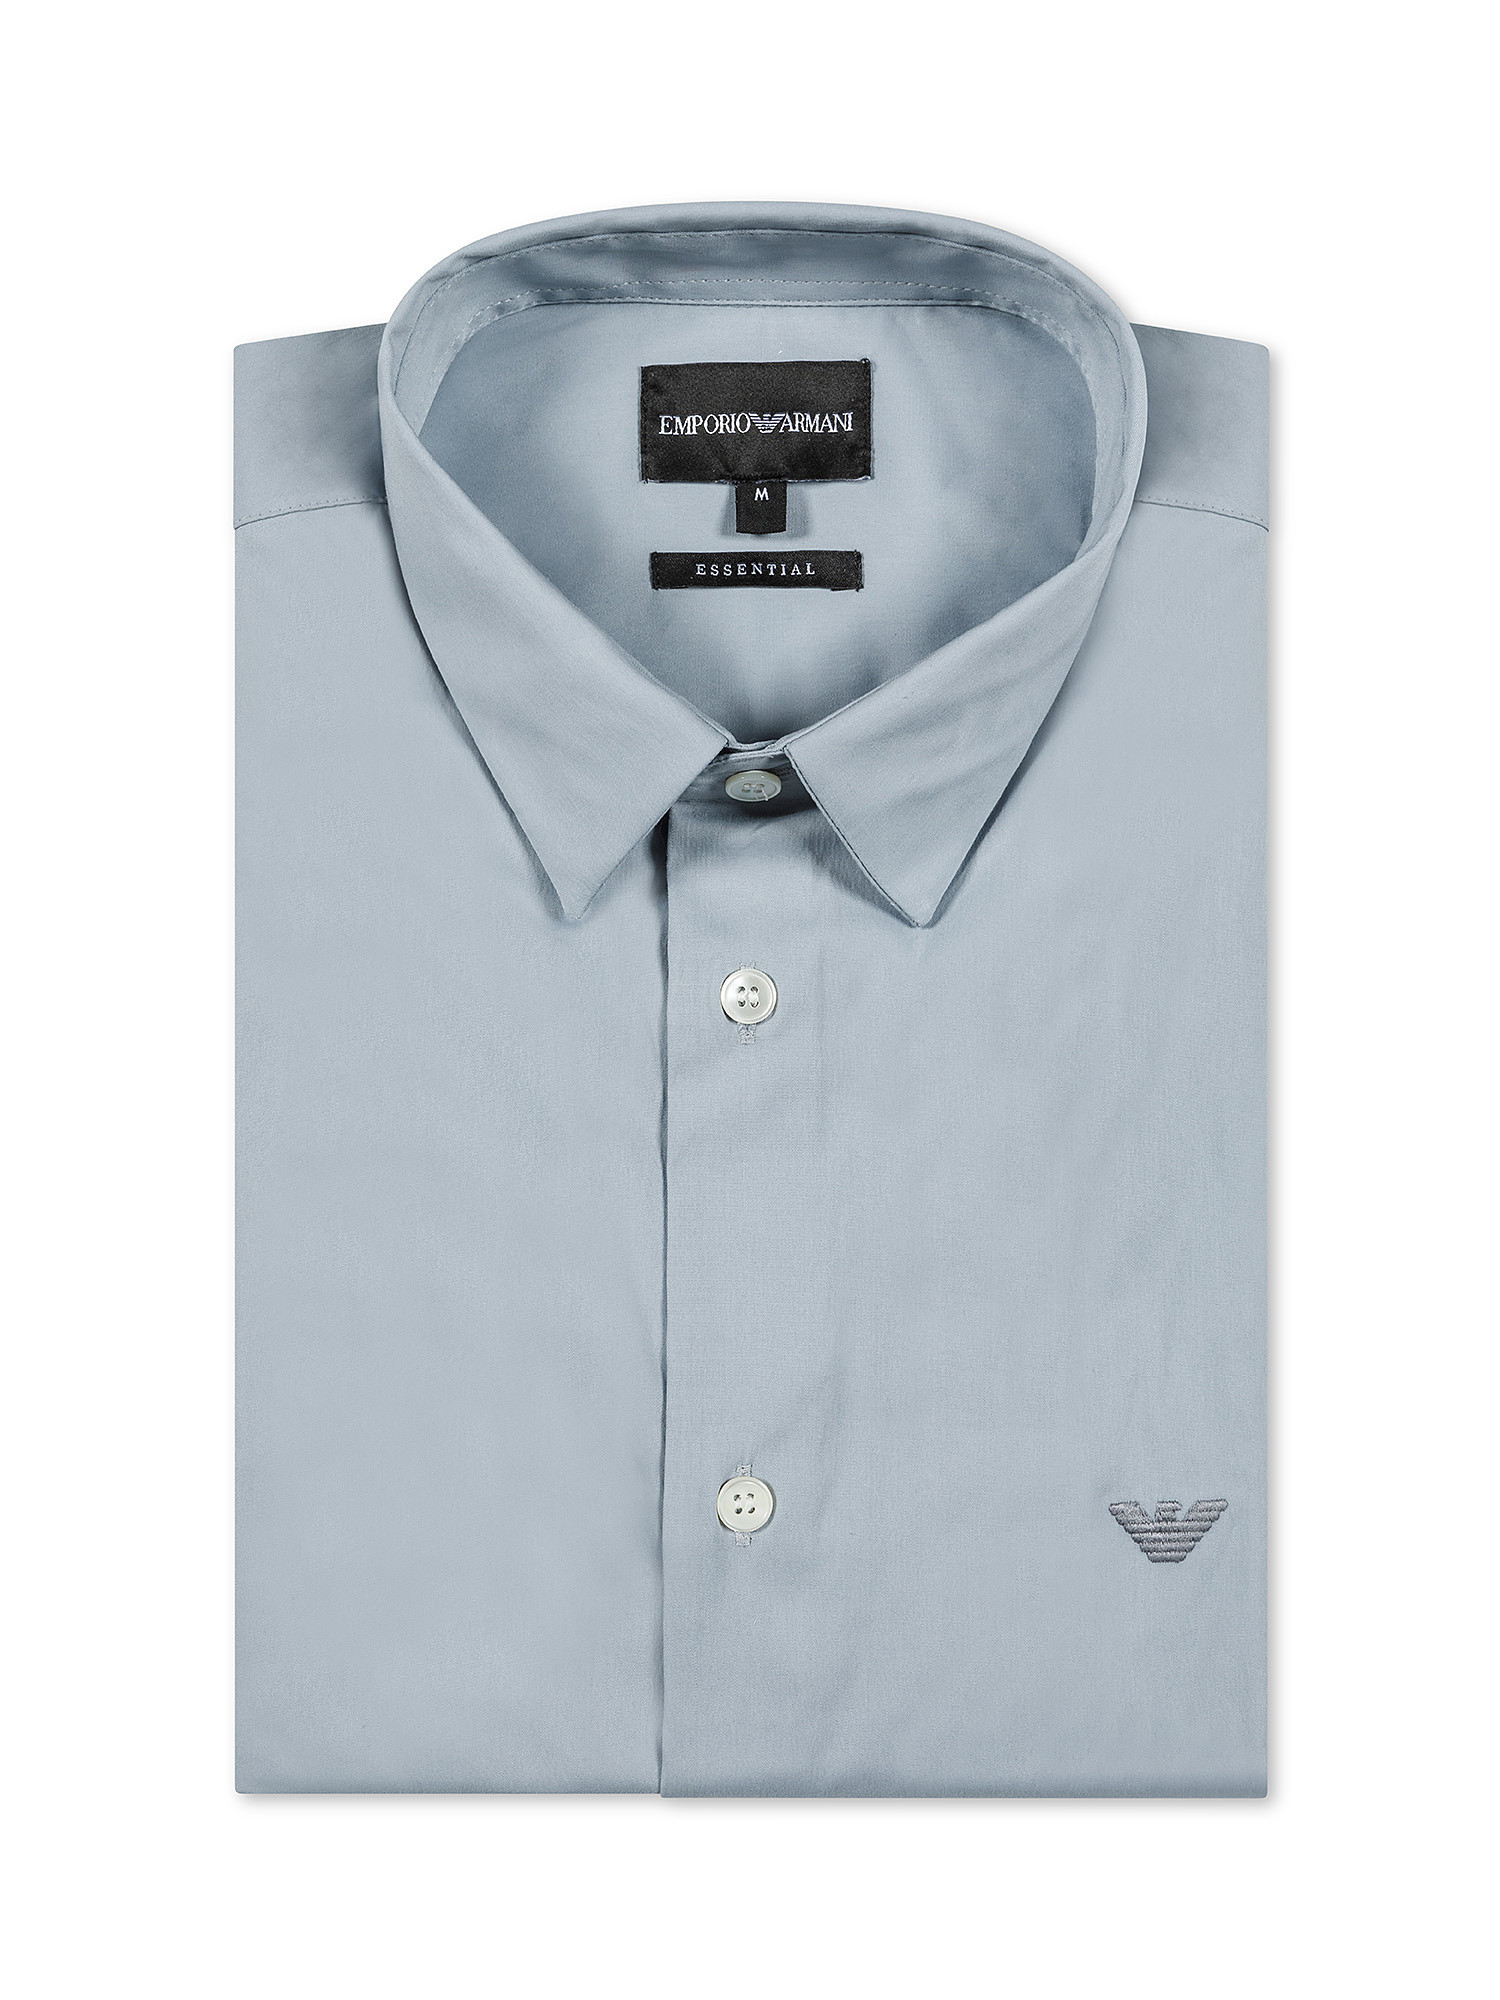 Emporio Armani - Camicia con logo ricamato, Azzurro, large image number 0